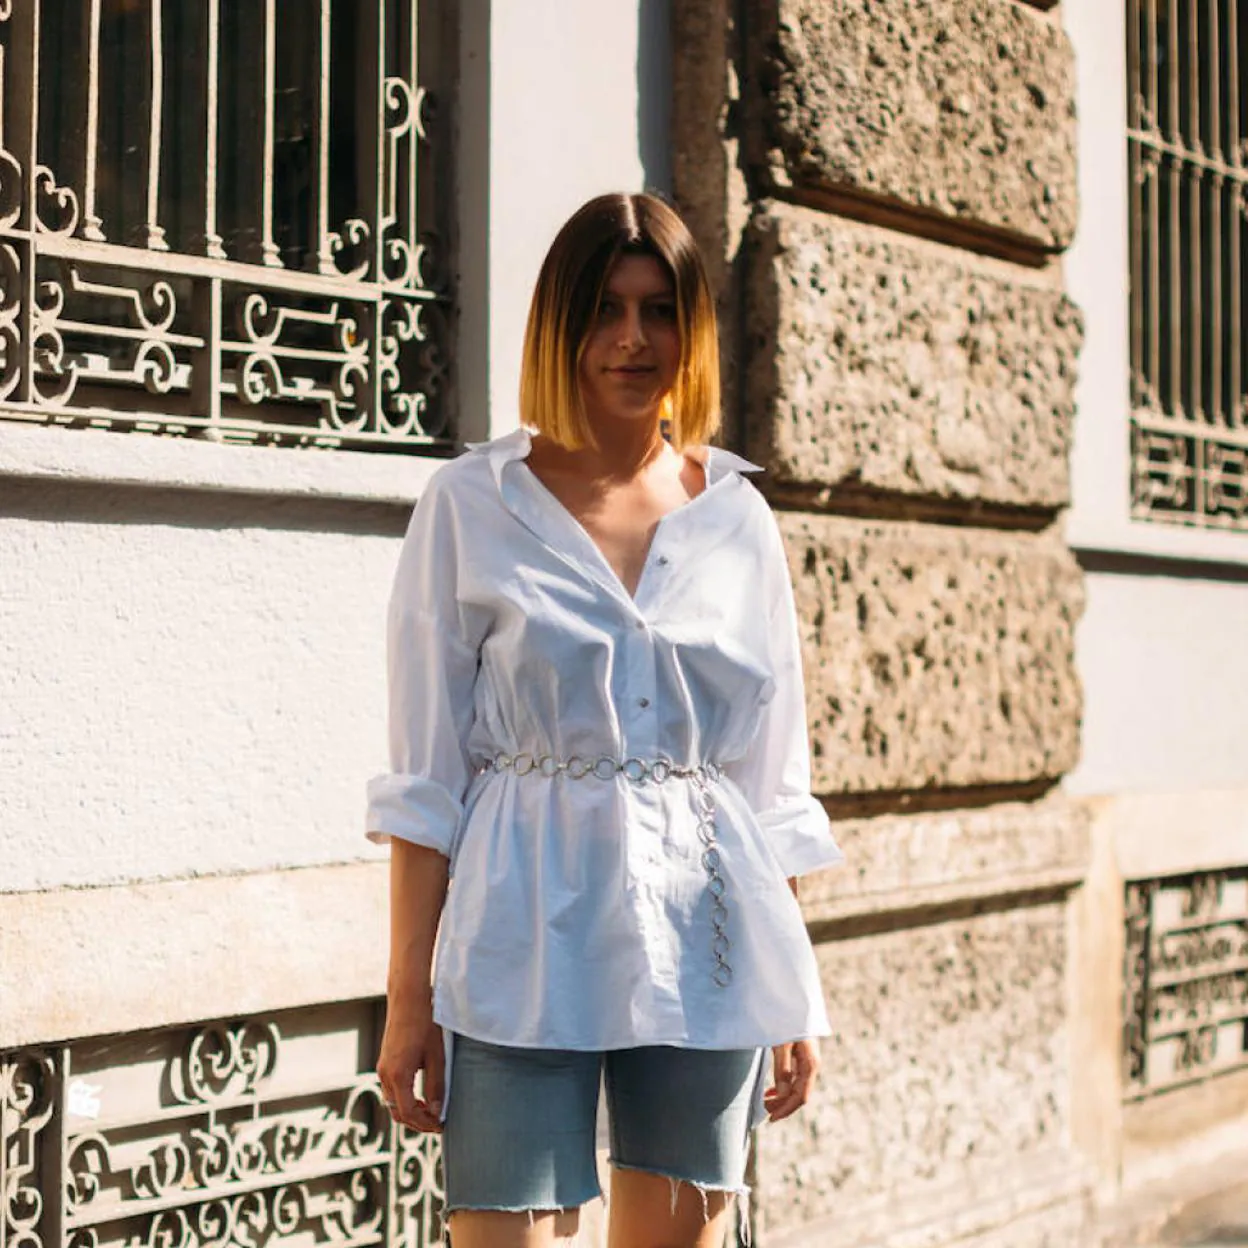 Las camisas blancas más bonitas de Zara para romper con reglas de los básicos esta primavera | Mujer Hoy